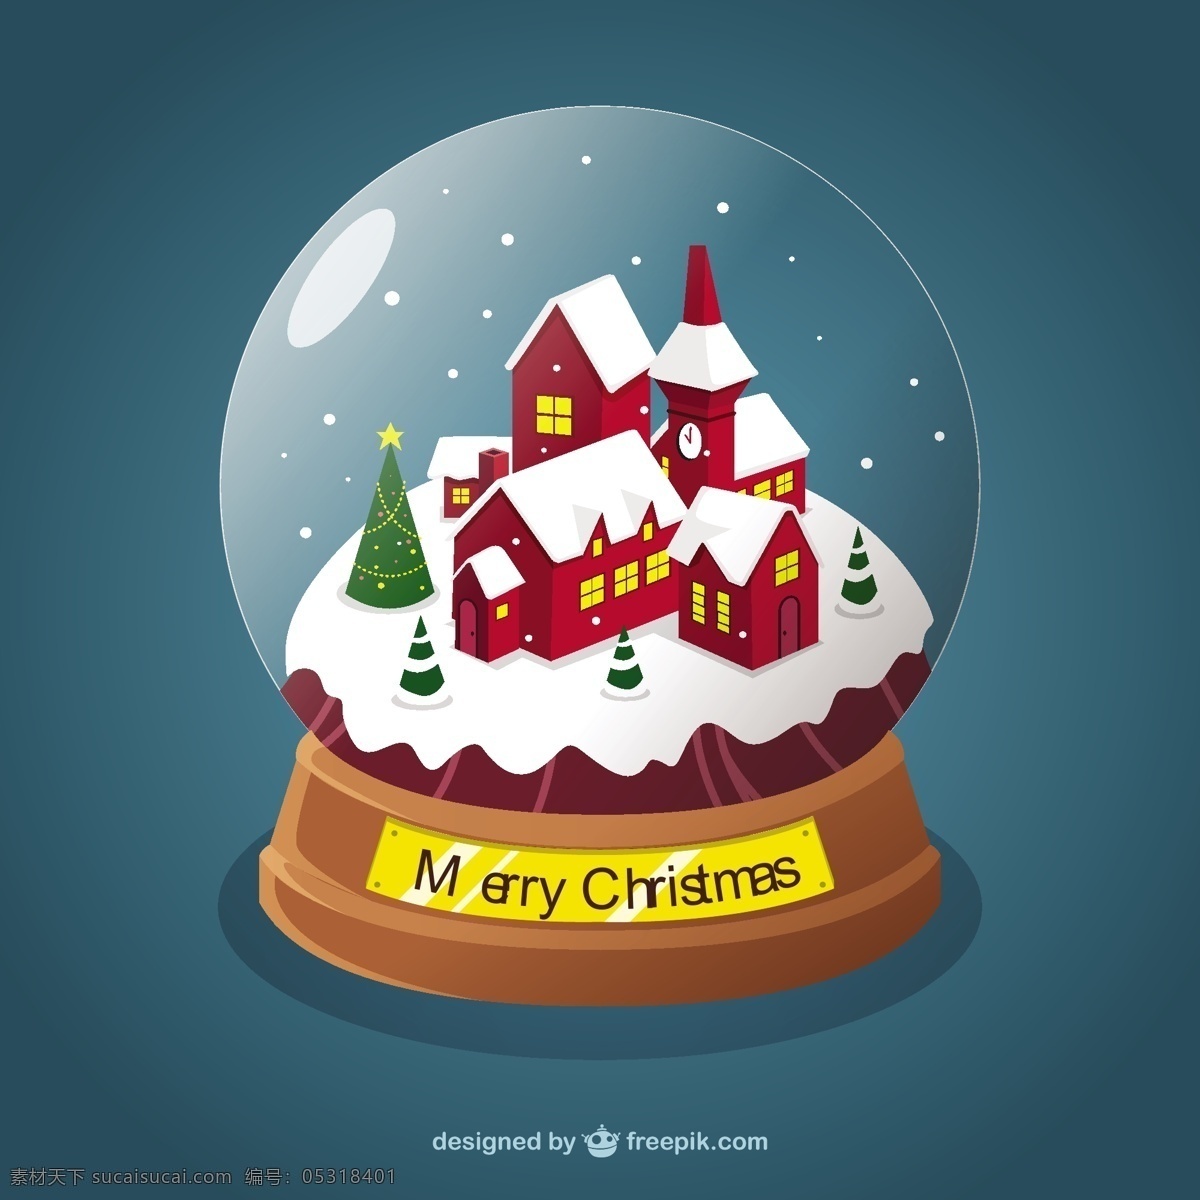 圣诞水晶球 圣诞 雪花 圣诞快乐 圣诞节 冬季 快乐 庆祝 假日 节假日 水晶 圣诞球 季节 节日 里面